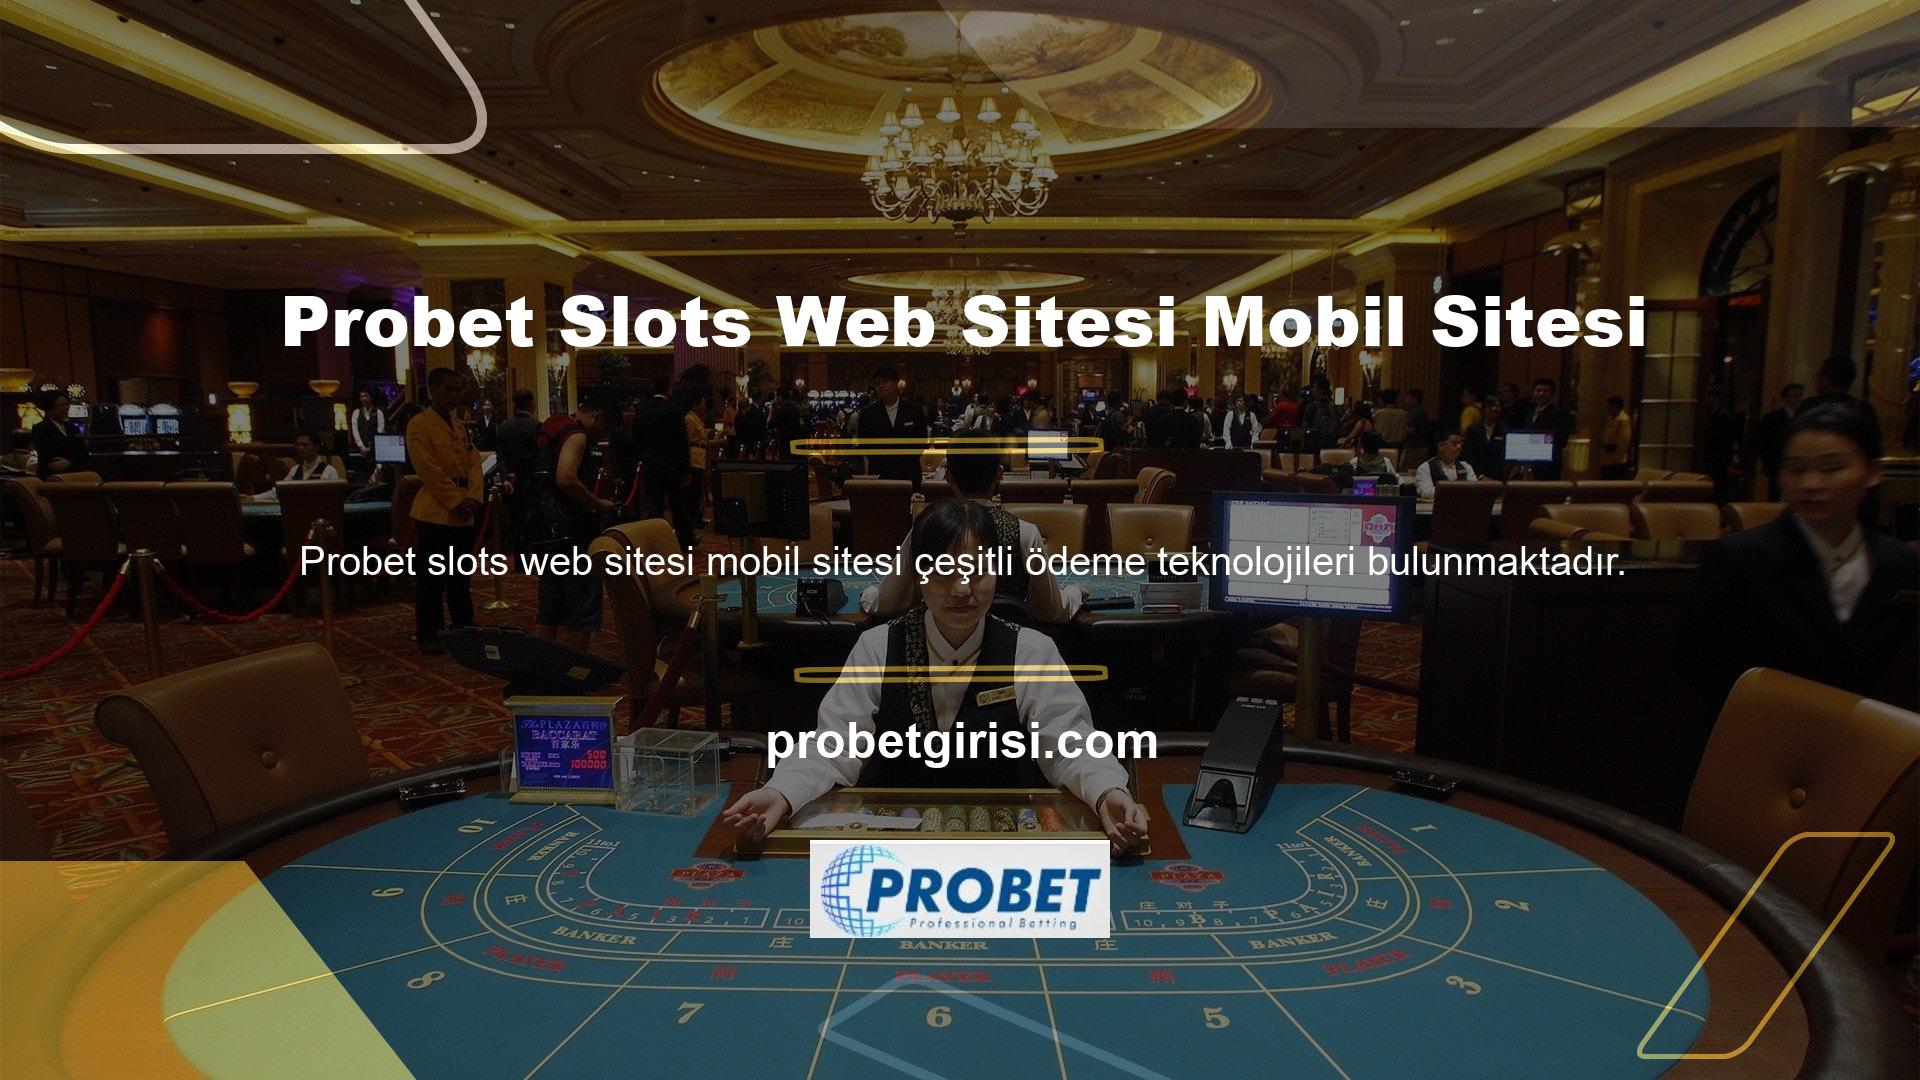 Ayrıca mobil site Probet slot sitesi katılımcıları gerekli parametreleri kullanmaktadır